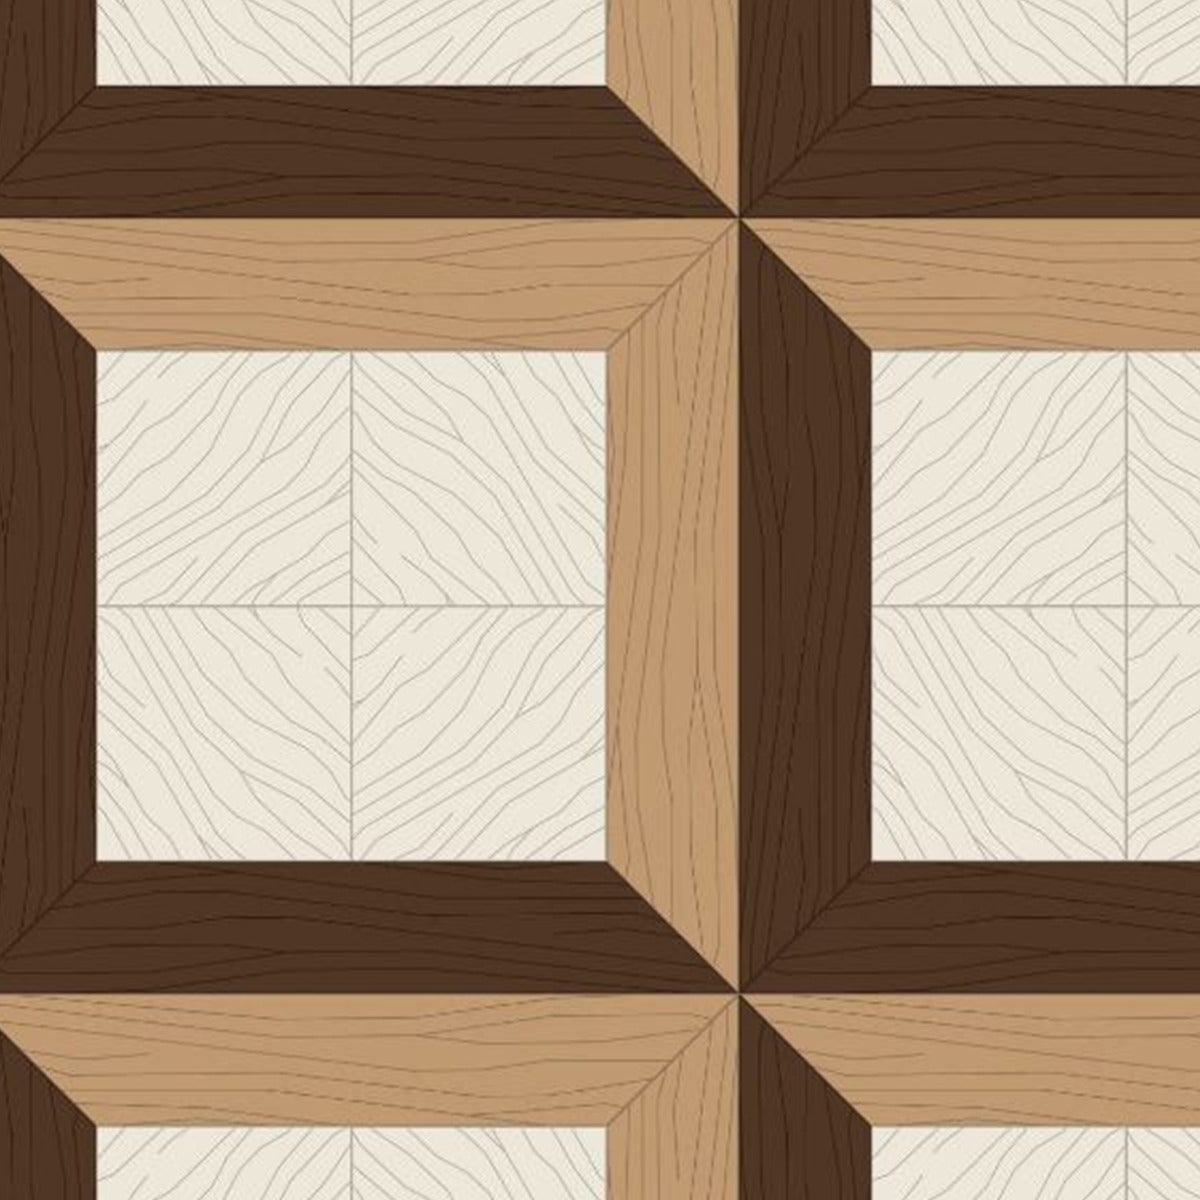 Bisazza Wood Collection, Bisazza Design Studio 'Zeus PHI' Flooring -0